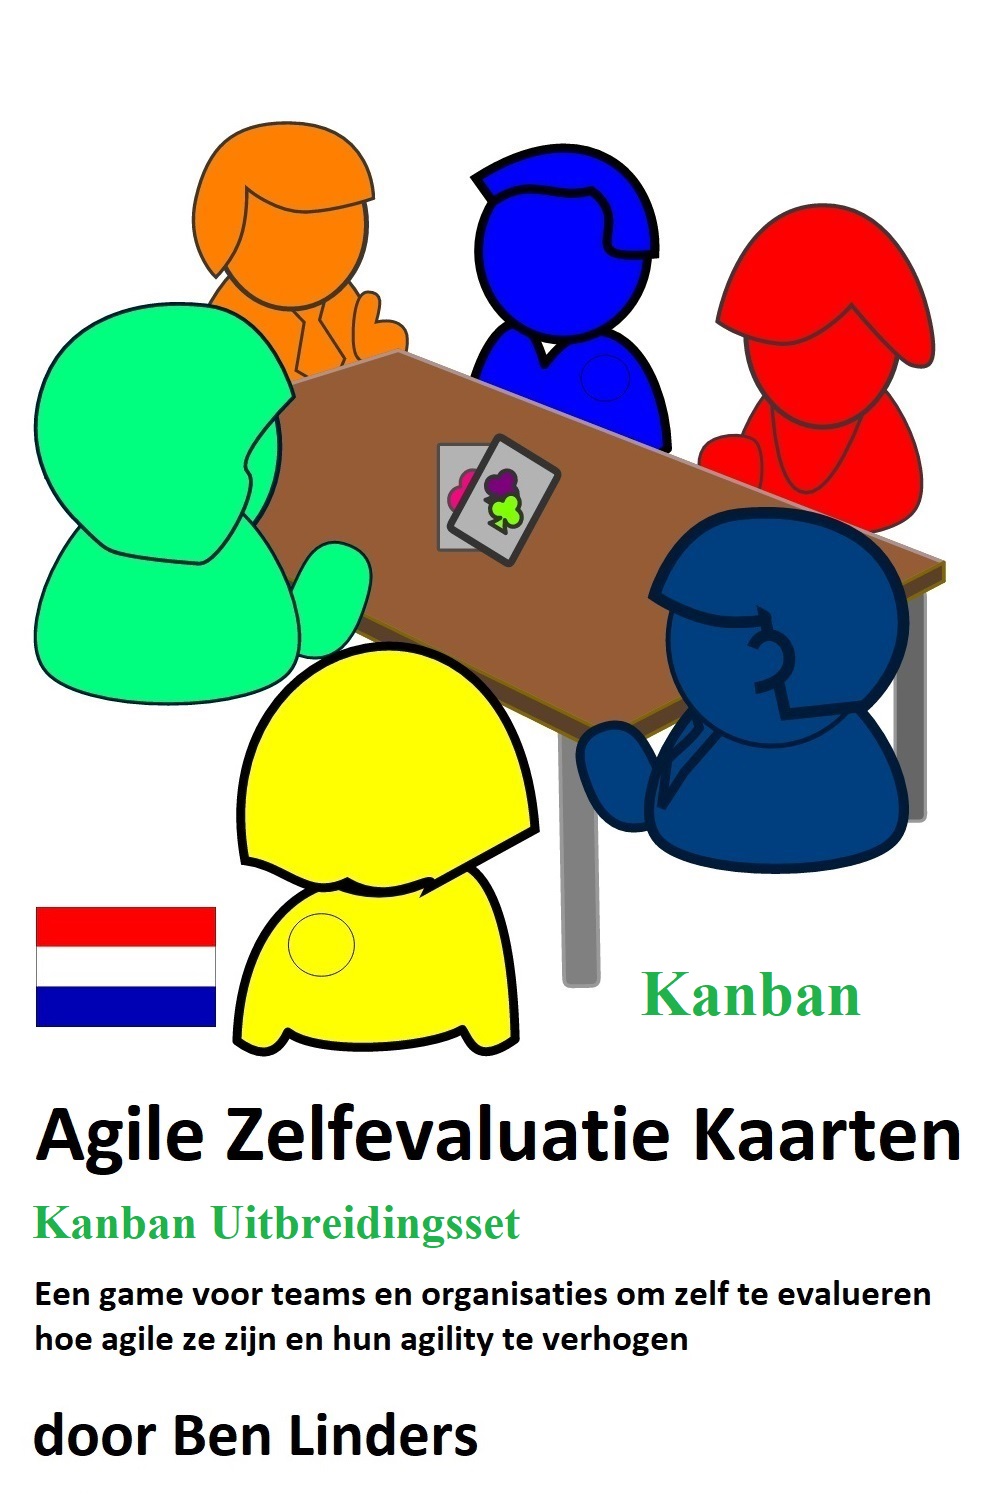 Kanban uitbreidingsset voor Agile Zelfevaluatie Kaarten